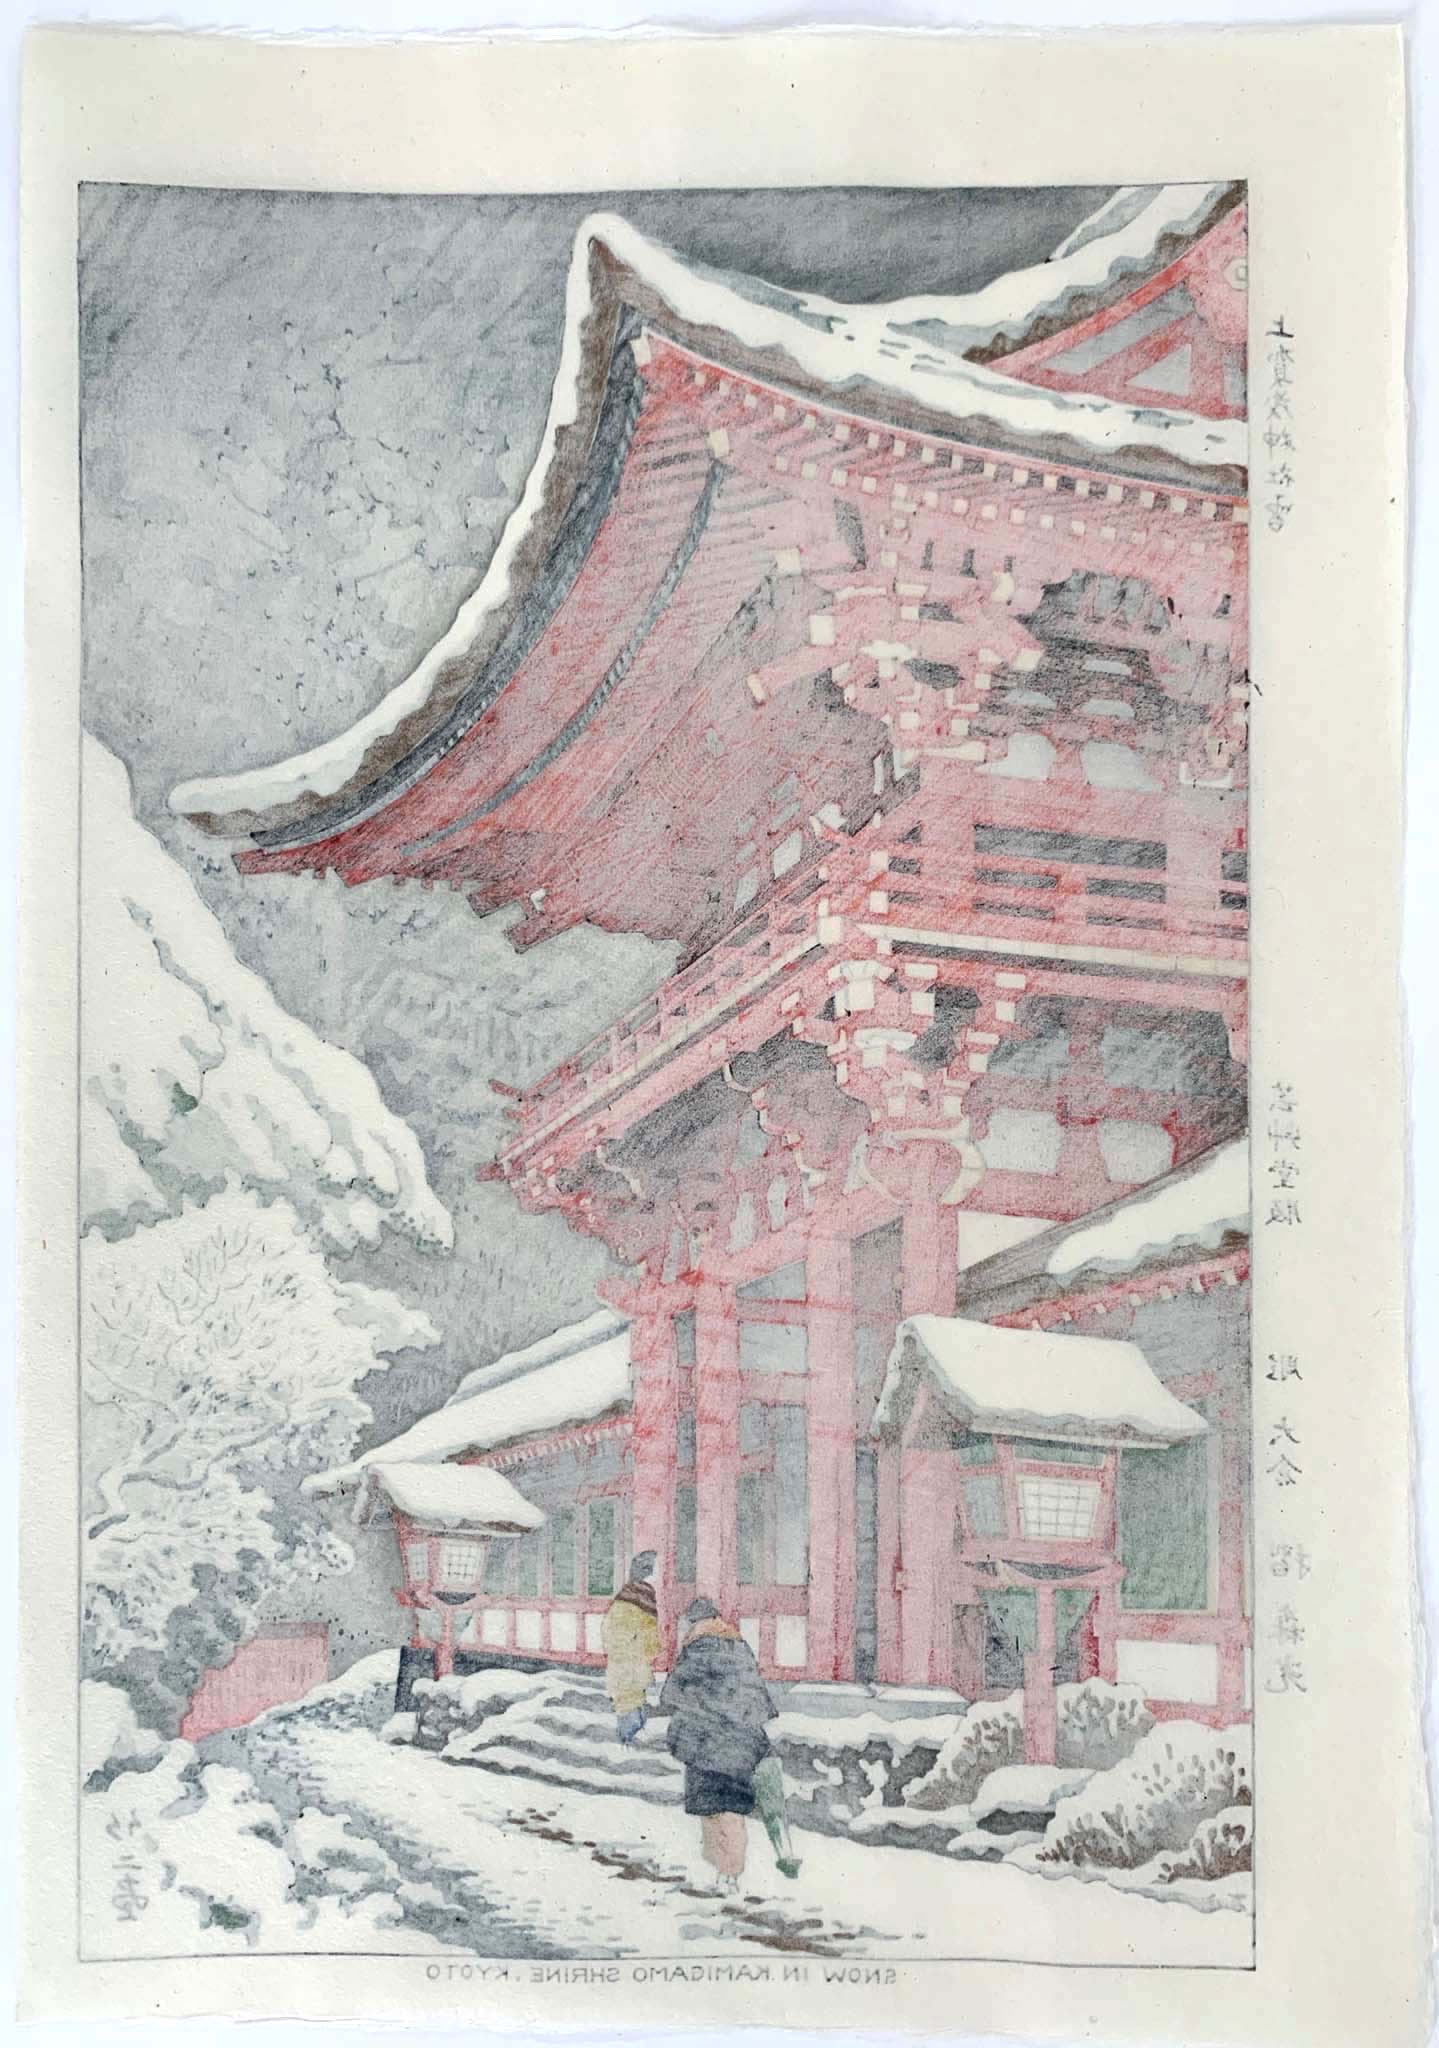 estampe japonaise paysage de neige, temple rouge à Kyoto, le dos de l'estampe